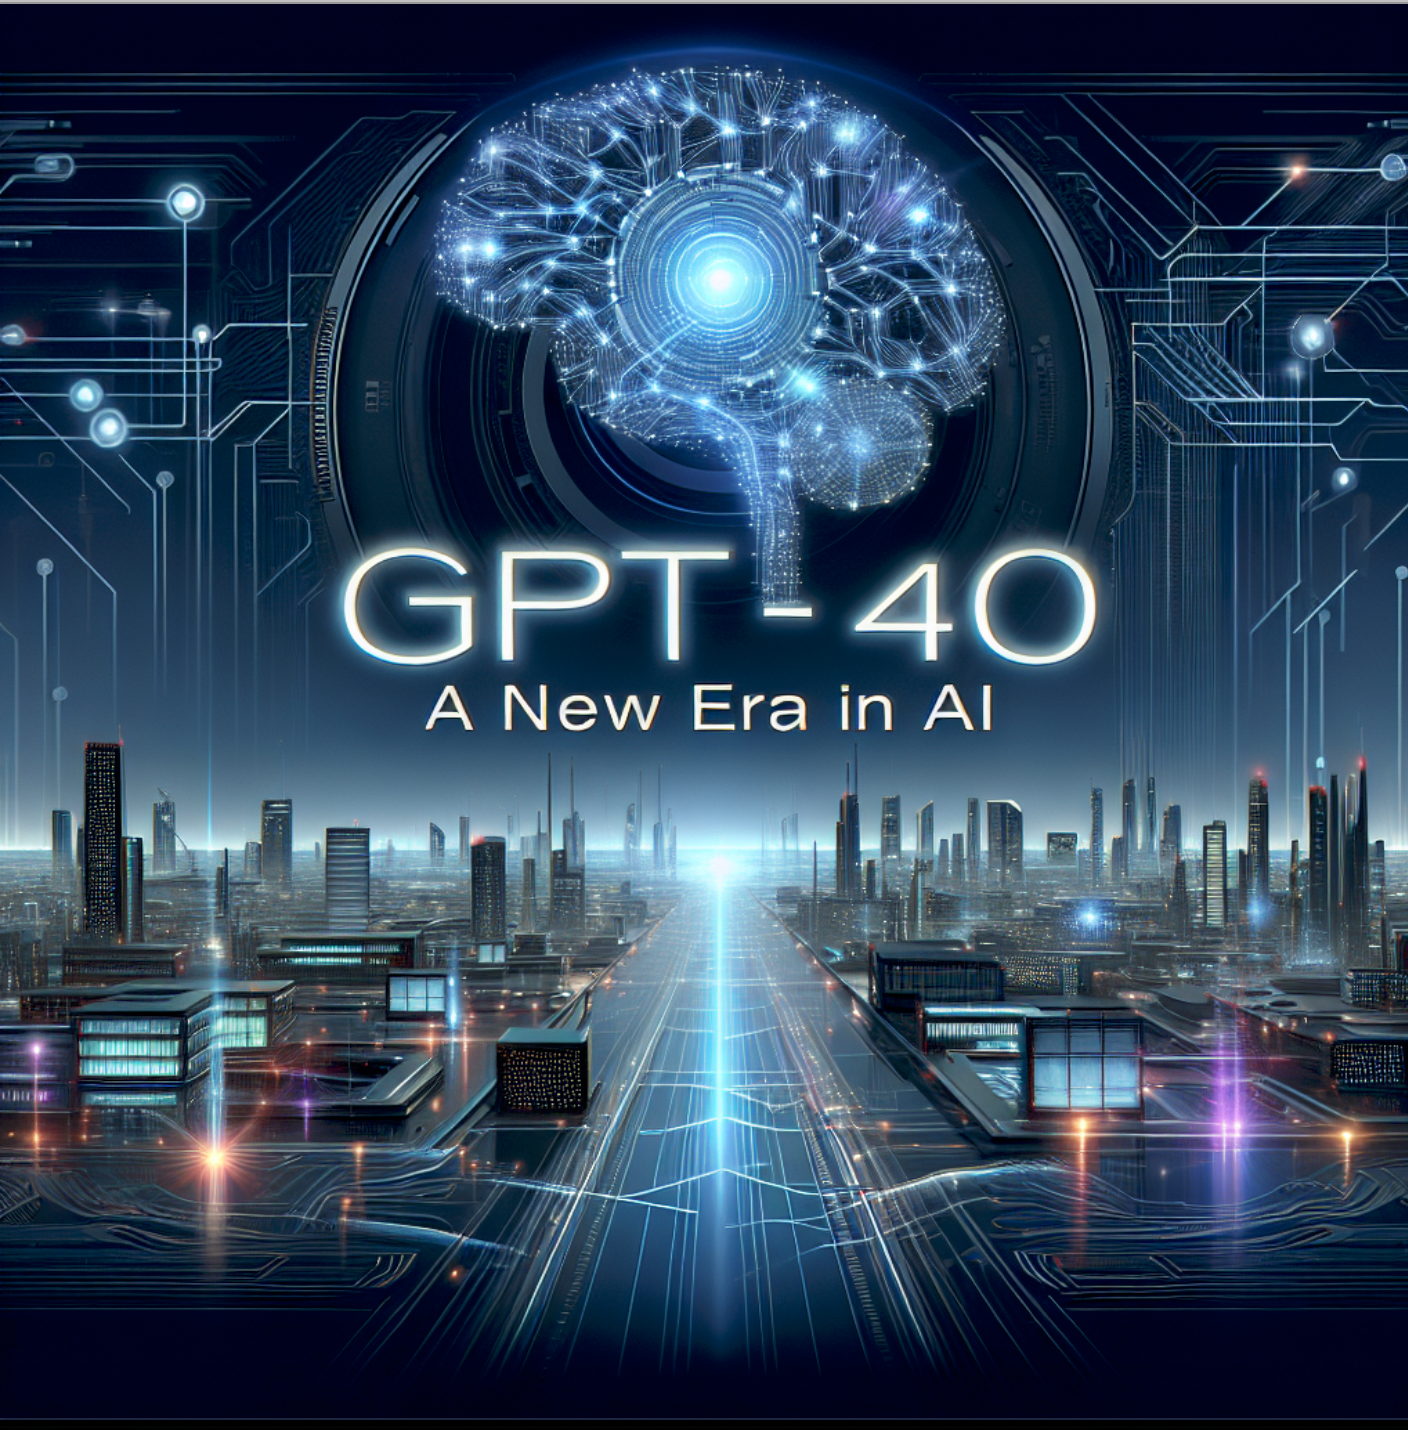 Title: GPT-4o: A New Era in AI